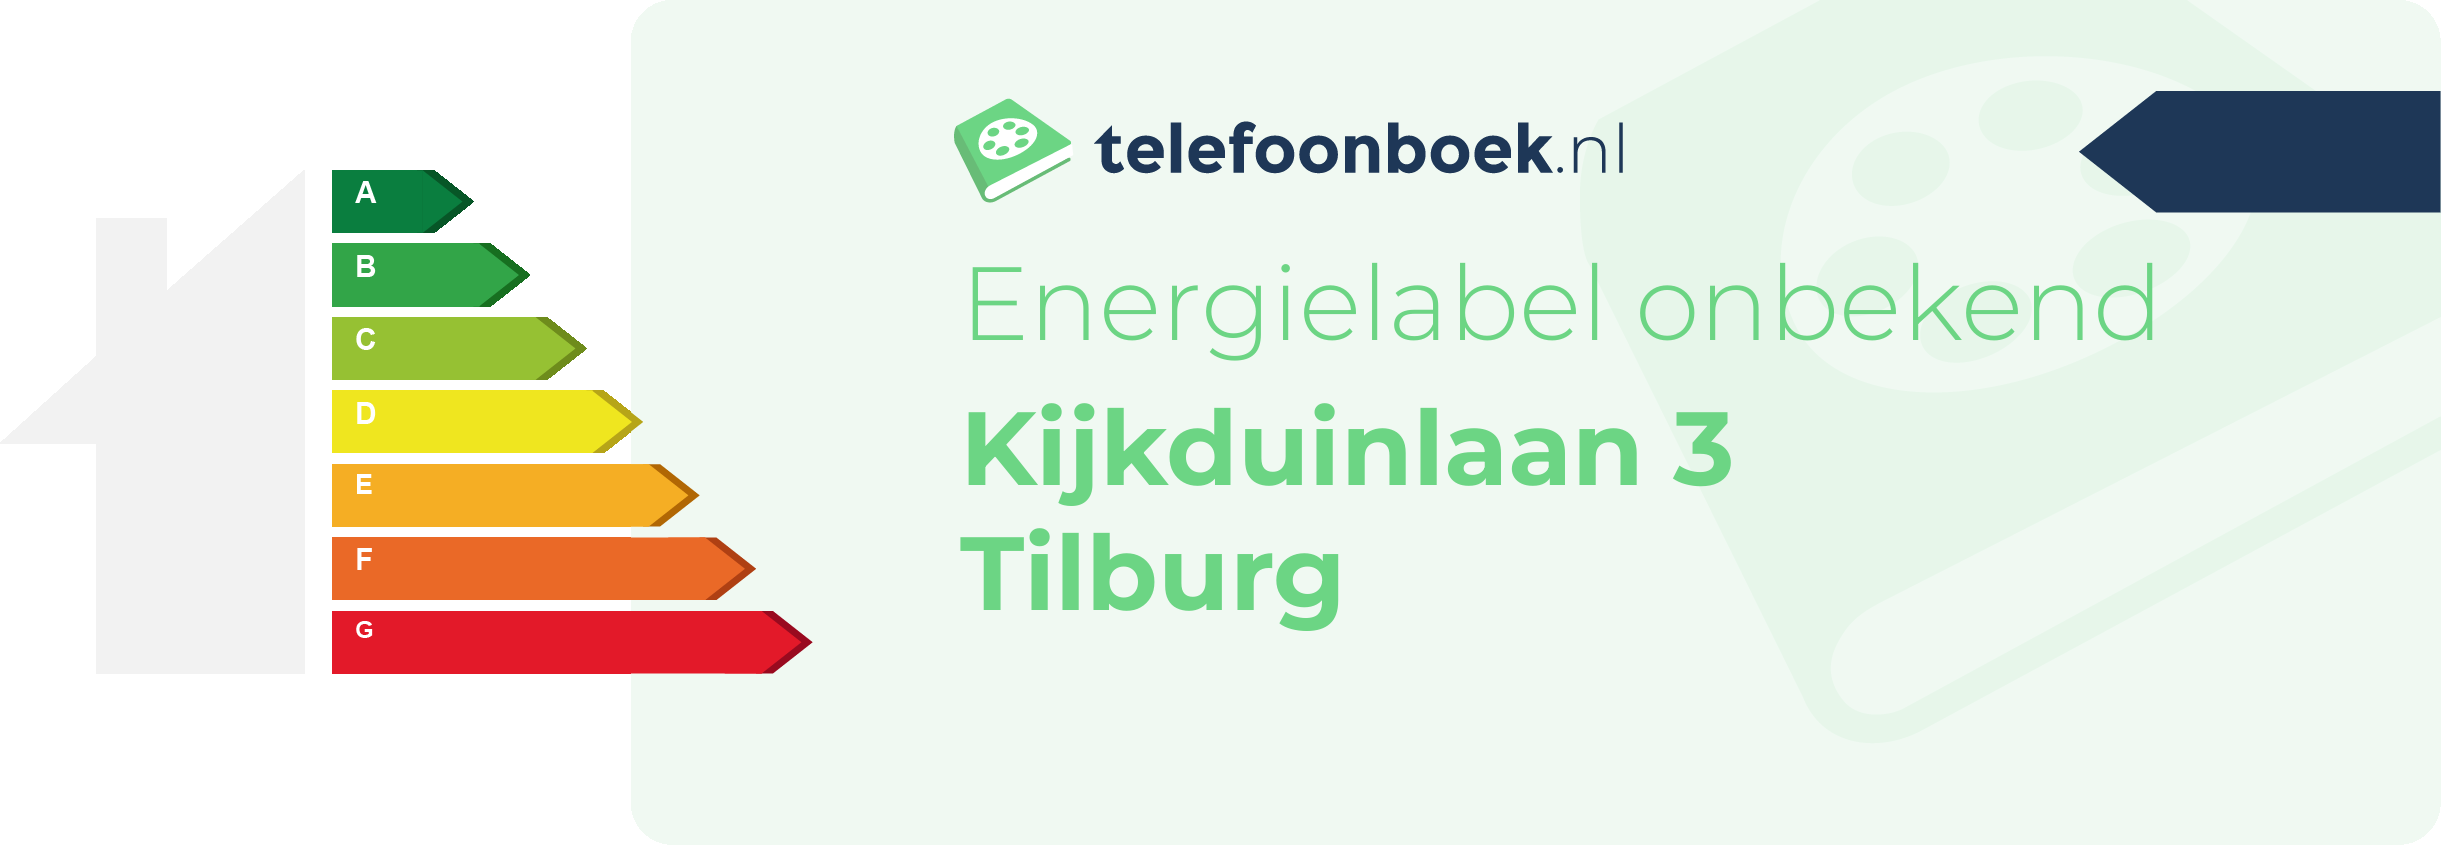 Energielabel Kijkduinlaan 3 Tilburg